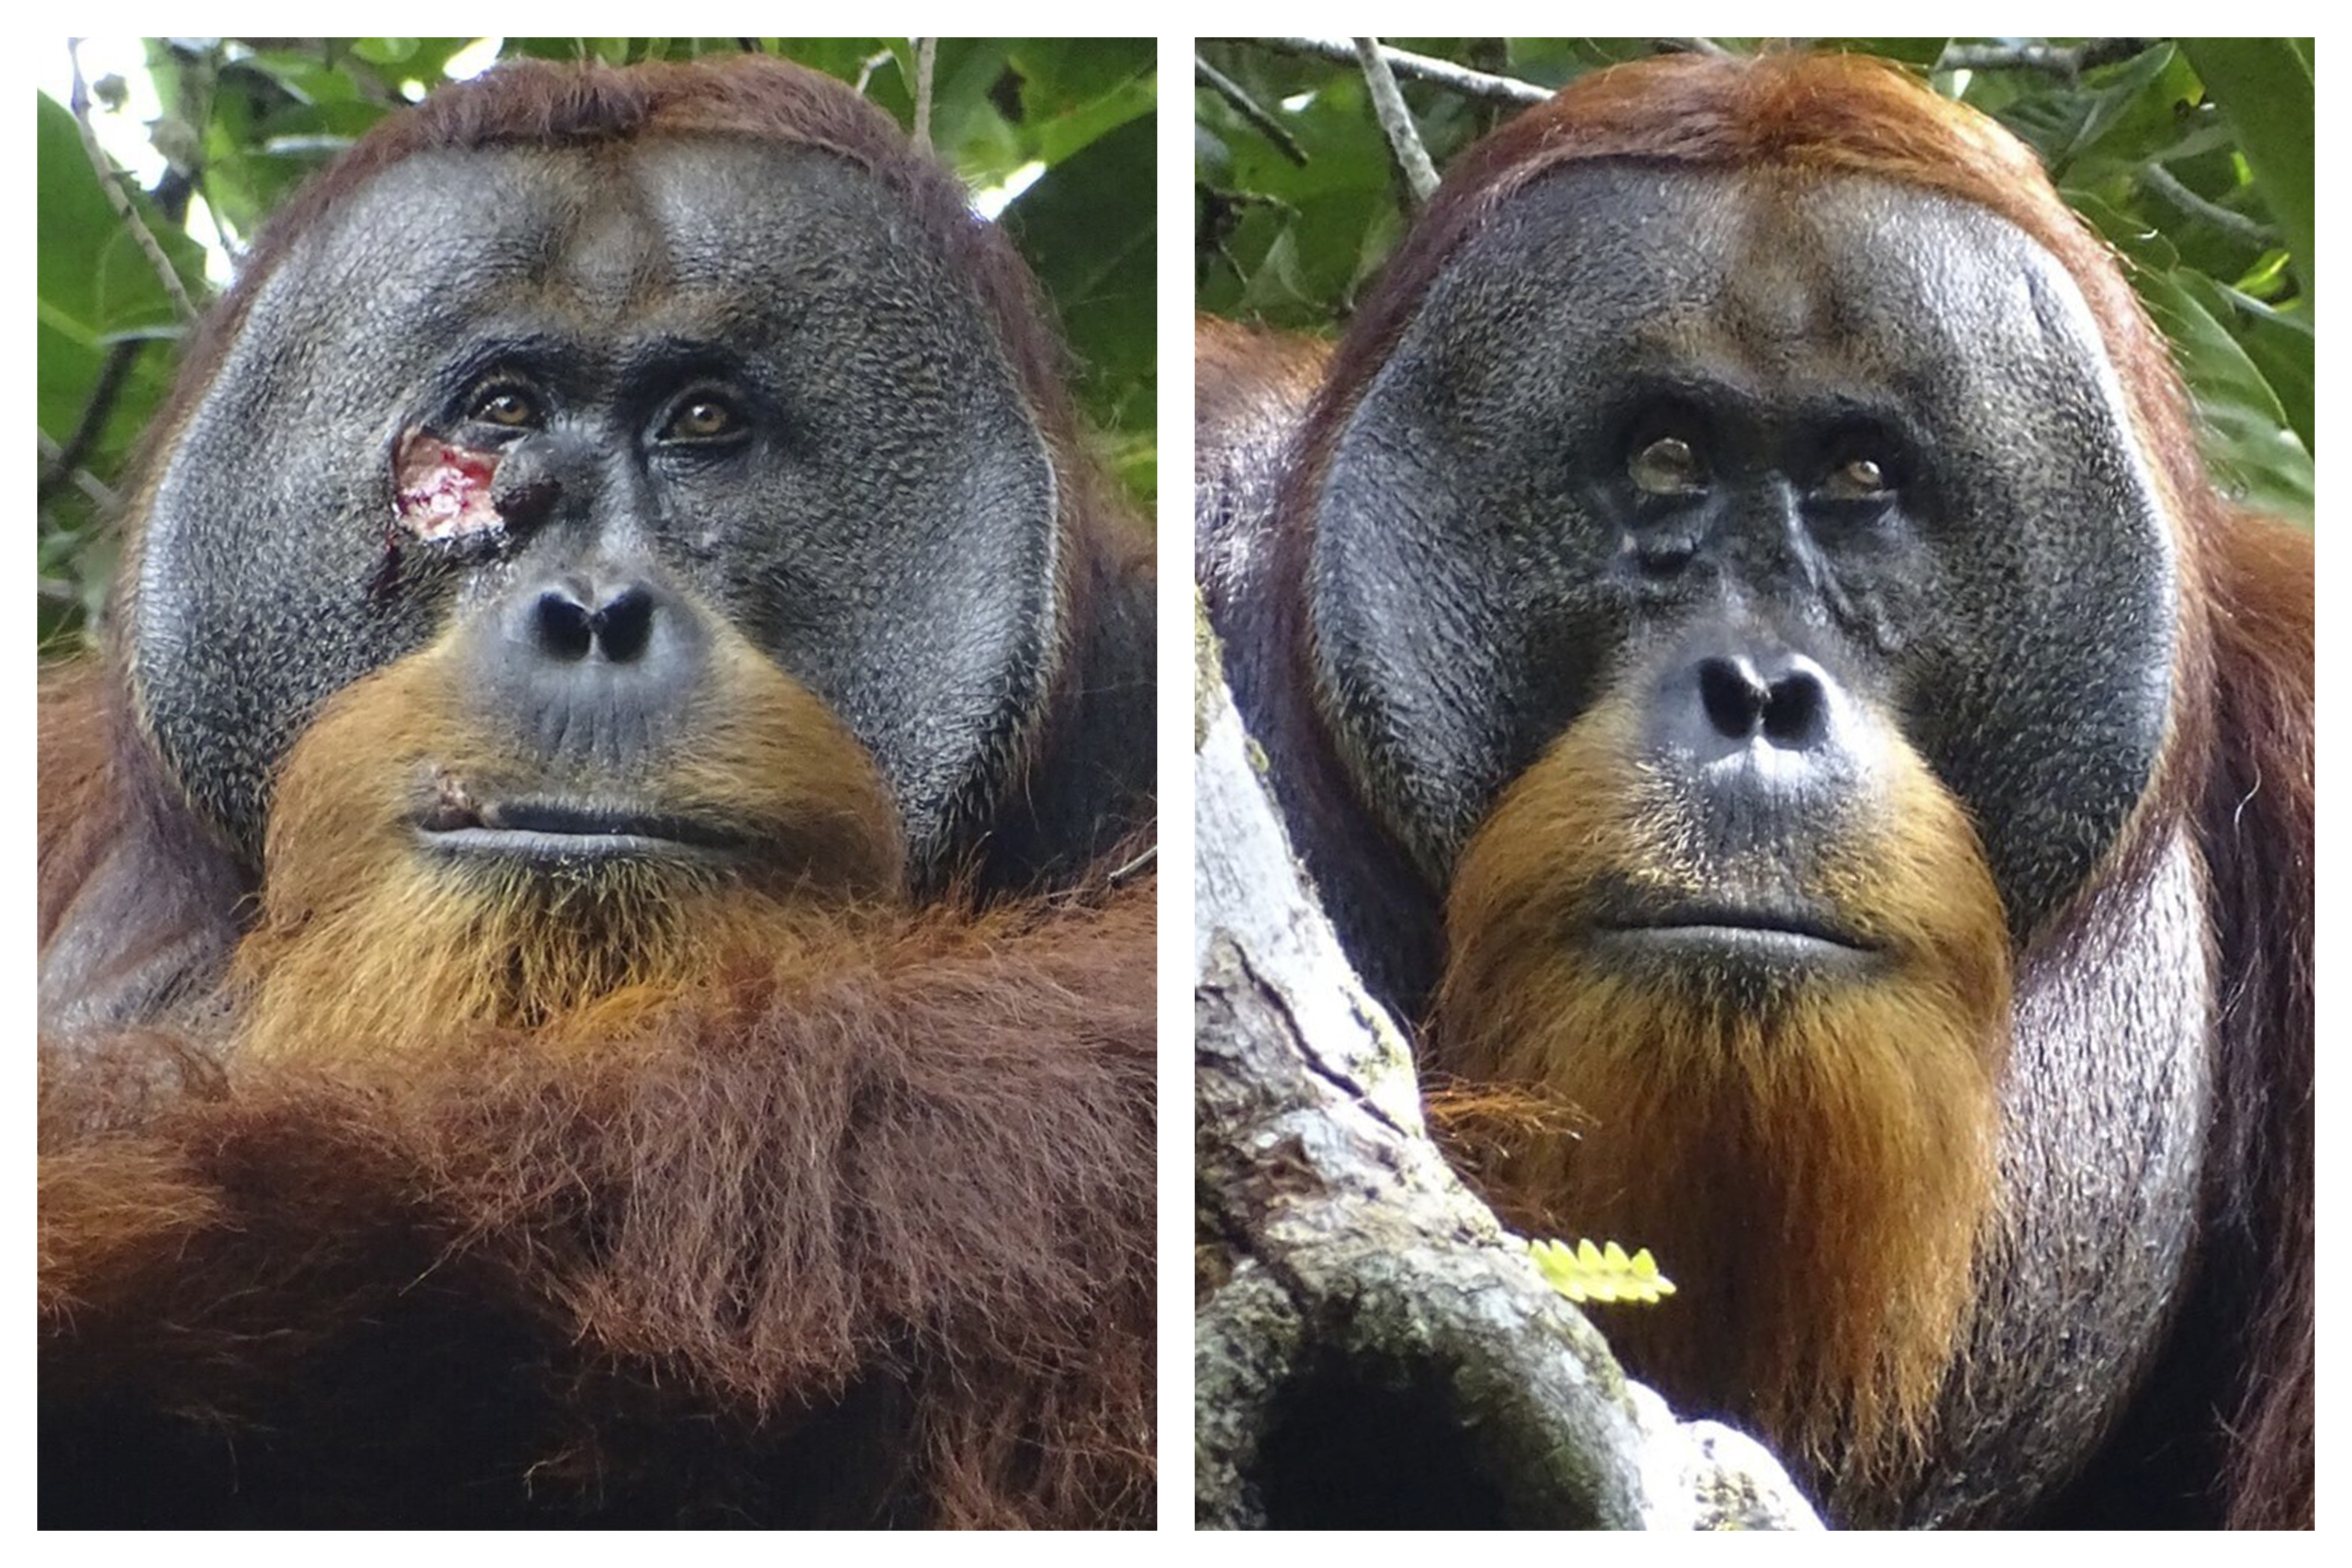 인도네시아 수마트라섬에 사는 수컷 오랑우탄 ‘라쿠스’의 얼굴 오른쪽 눈 아래에 큰 상처가 나 있다(왼쪽). 라쿠스는 약초를 이용해 상처를 치료했는데, 두 달 후쯤 해당 상처가 거의 보이지 않을 정도로 완전히 치유됐다. AP 연합뉴스